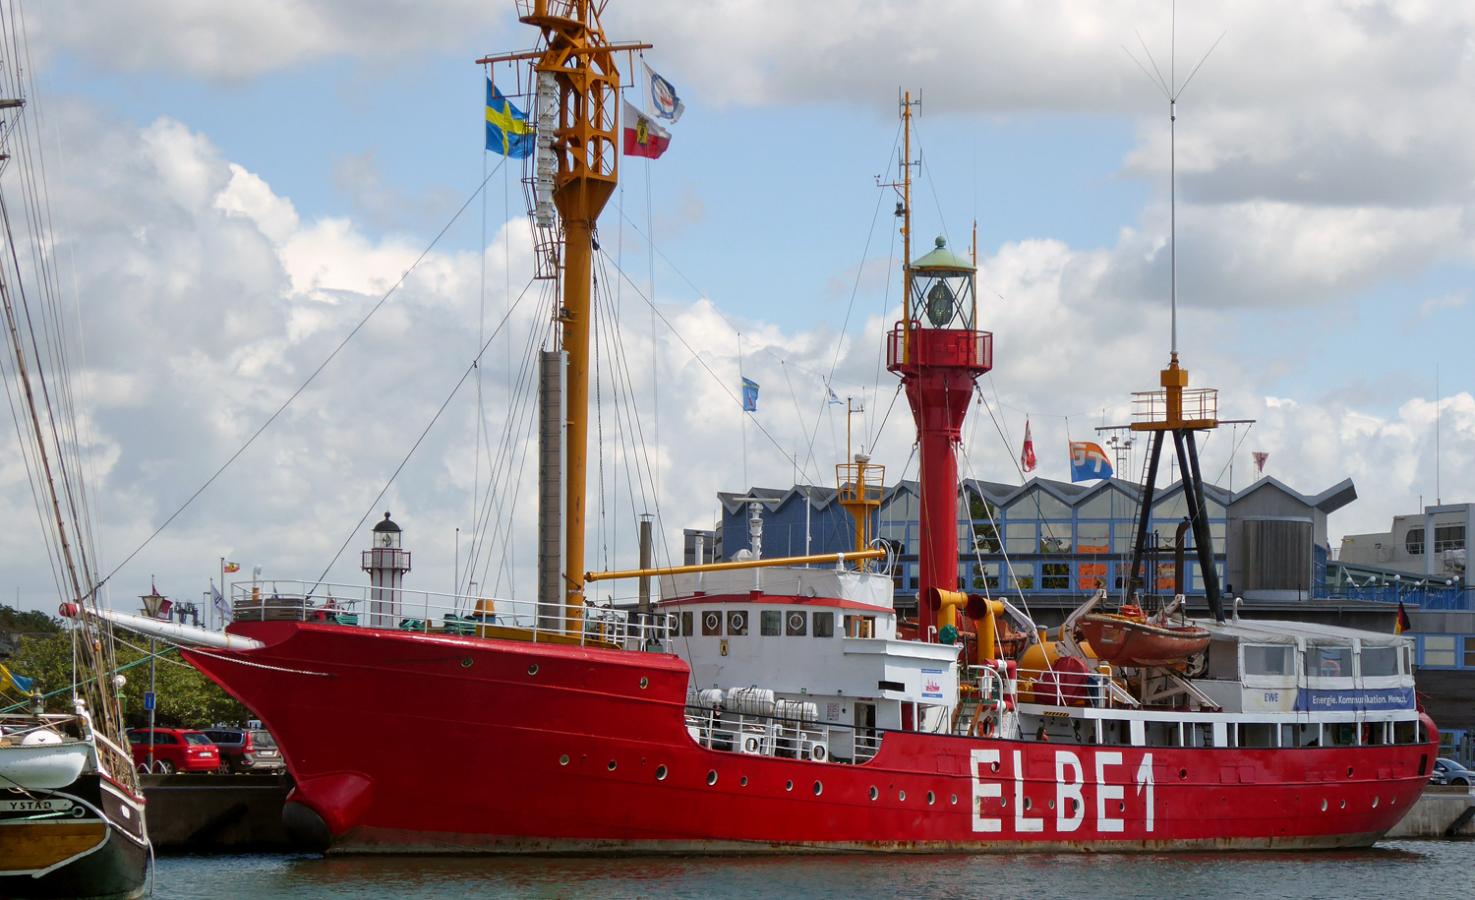 Elbe 1 Lightship